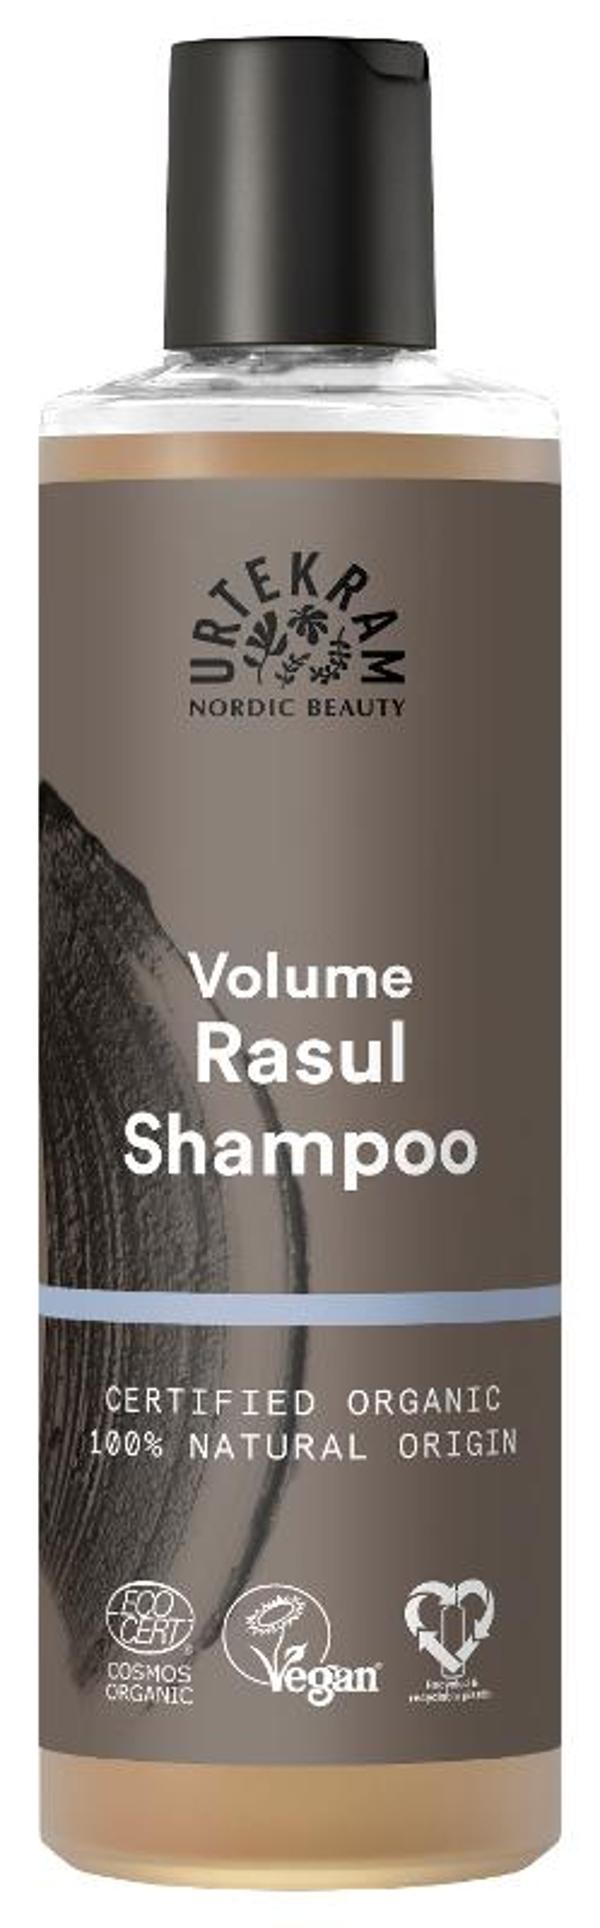 Produktfoto zu Rasul Shampoo 250ml